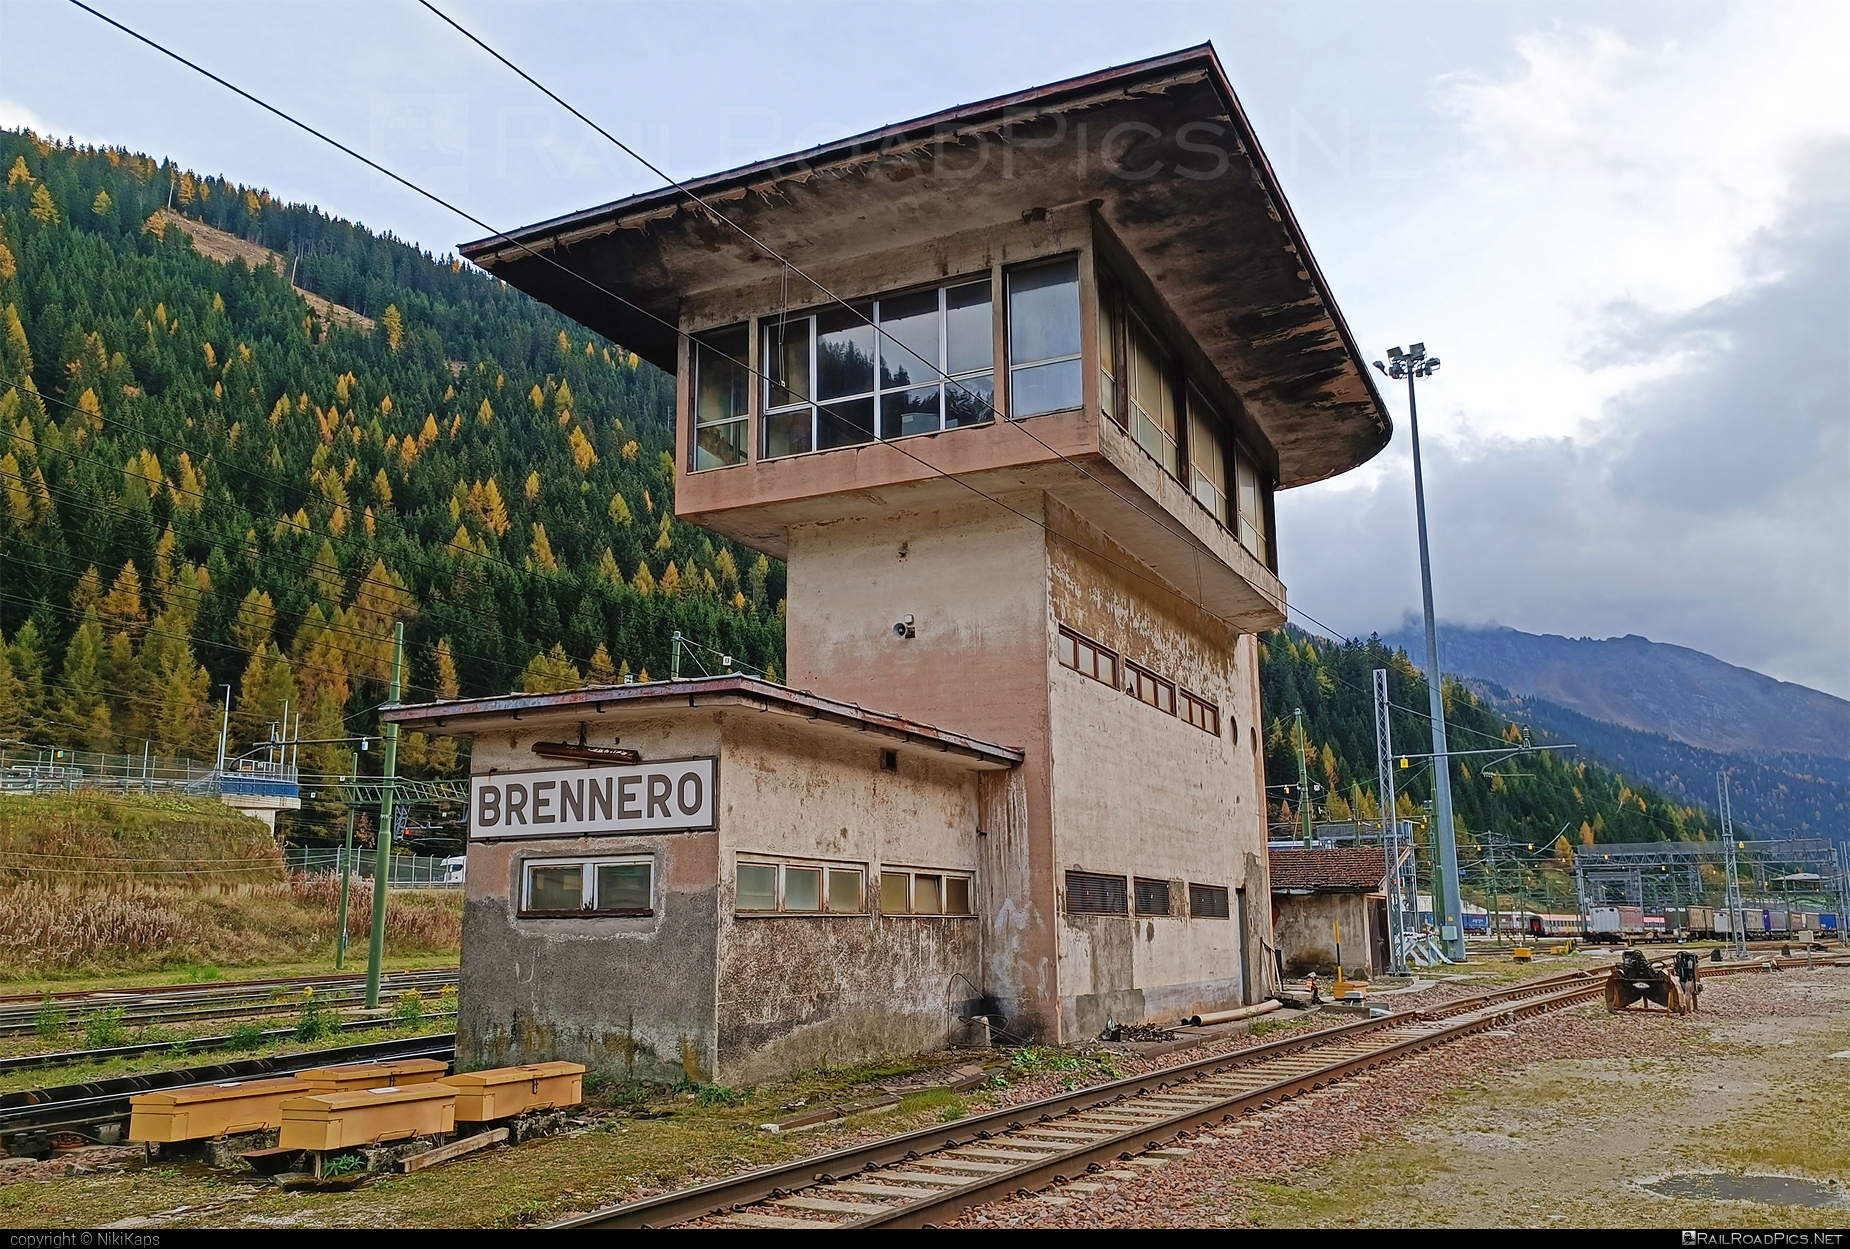 Brennero - Brenner location overview #BrennerRailwayStation #BrenneroRailwayStation #ferroviedellostato #fs #fsitaliane